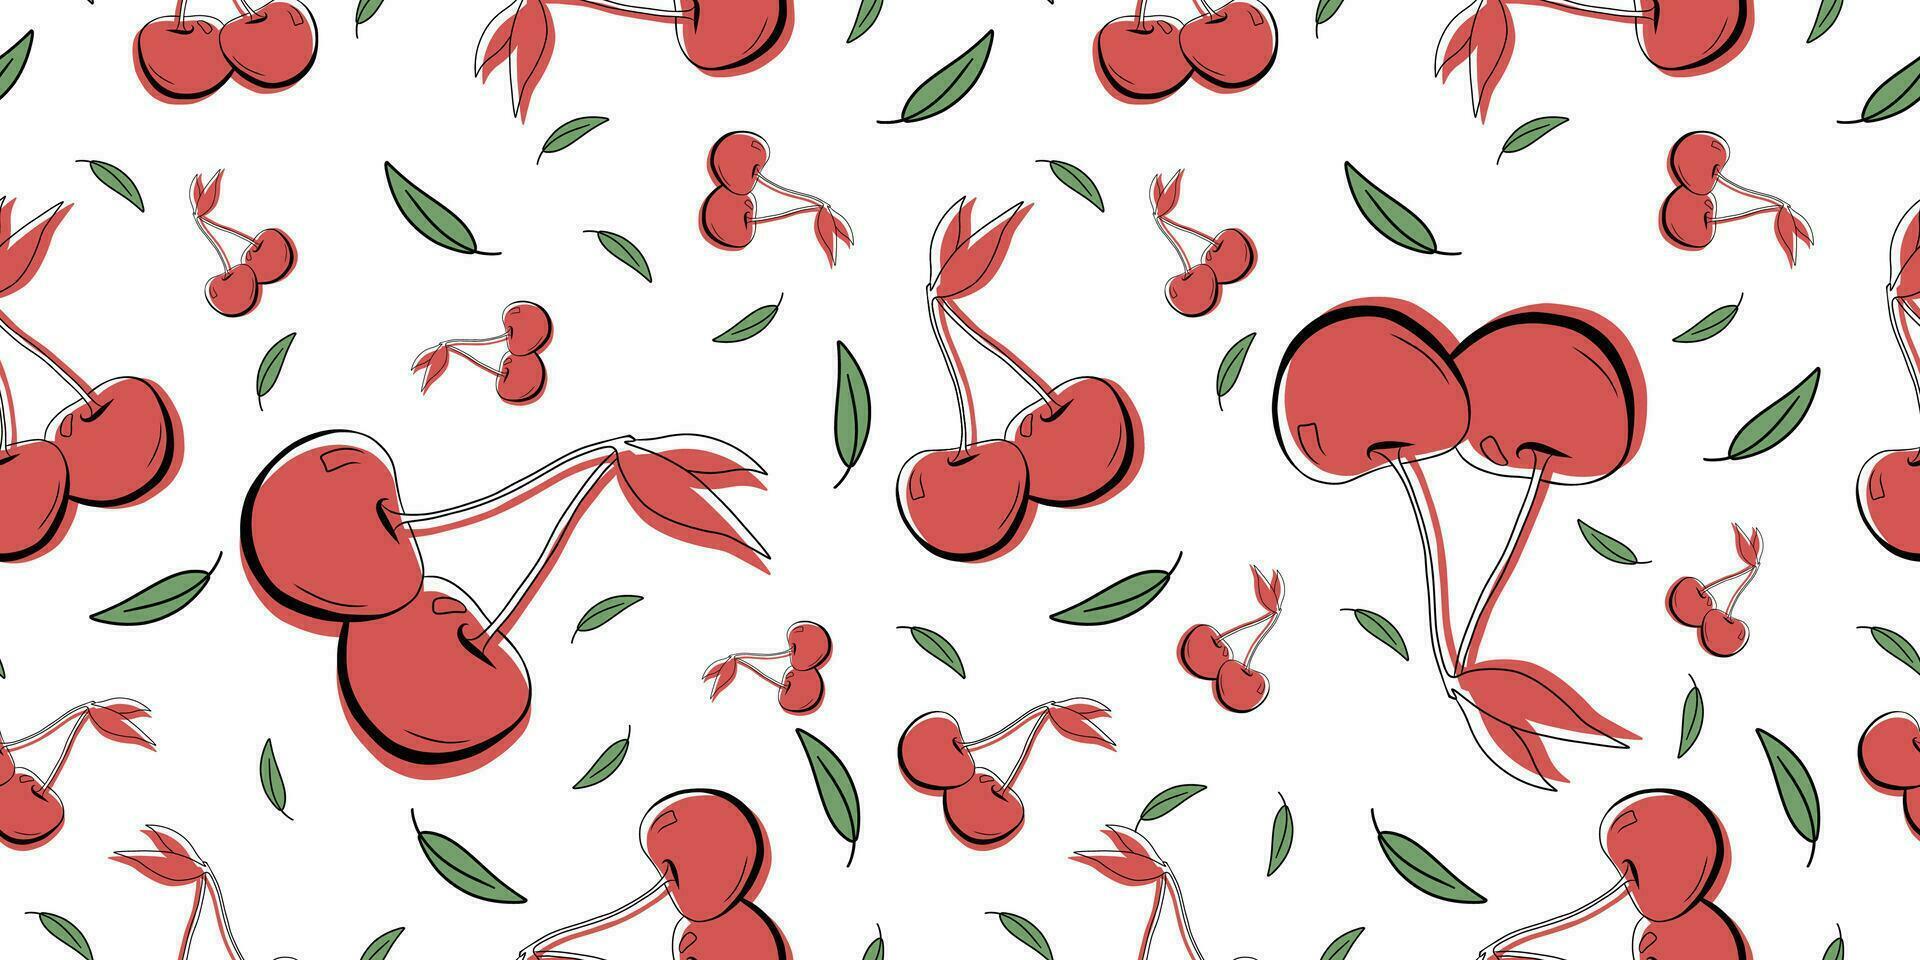 desatado brilhante branco, vermelho, verde padronizar com fresco delicioso cerejas, cereja para tecido, desenhando rótulos, impressão em camiseta, papel de parede do crianças sala, fruta fundo. vetor